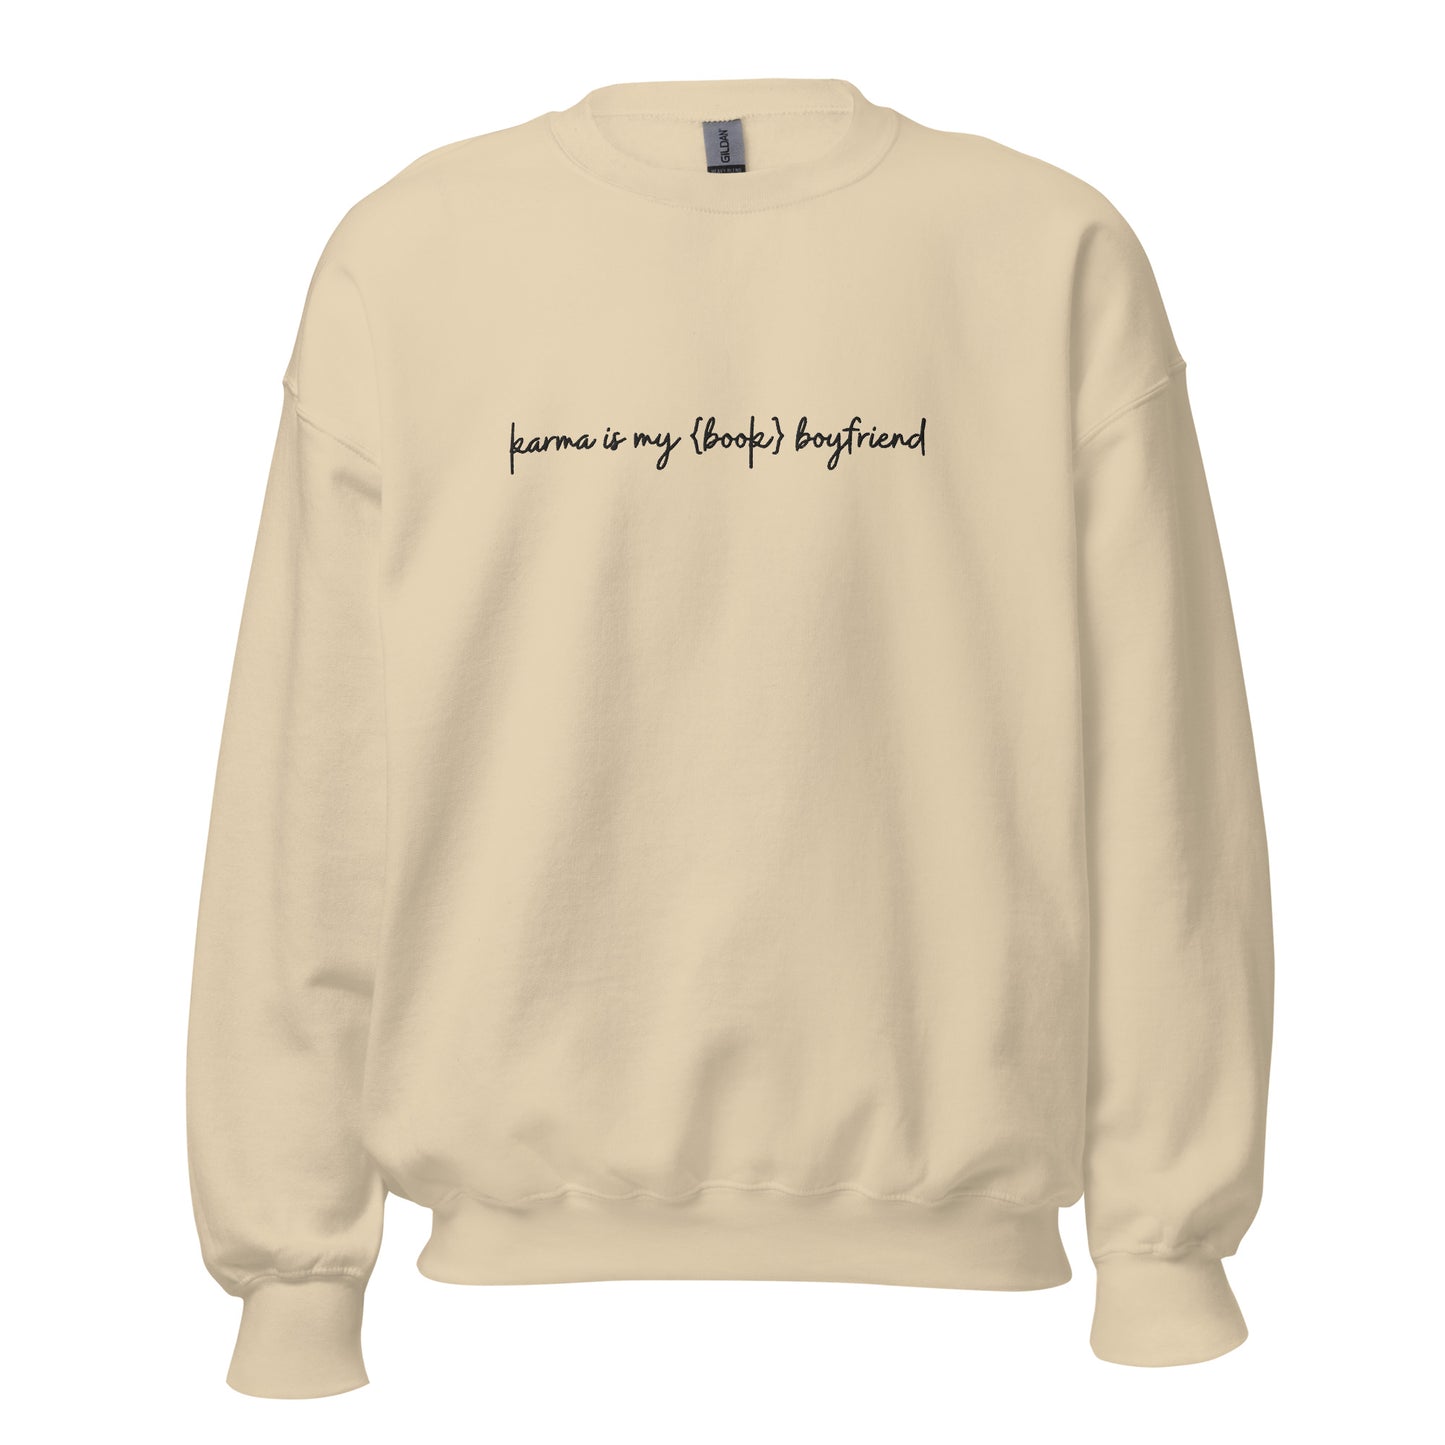 karma is my {book} boyfriend embroidered sweatshirt